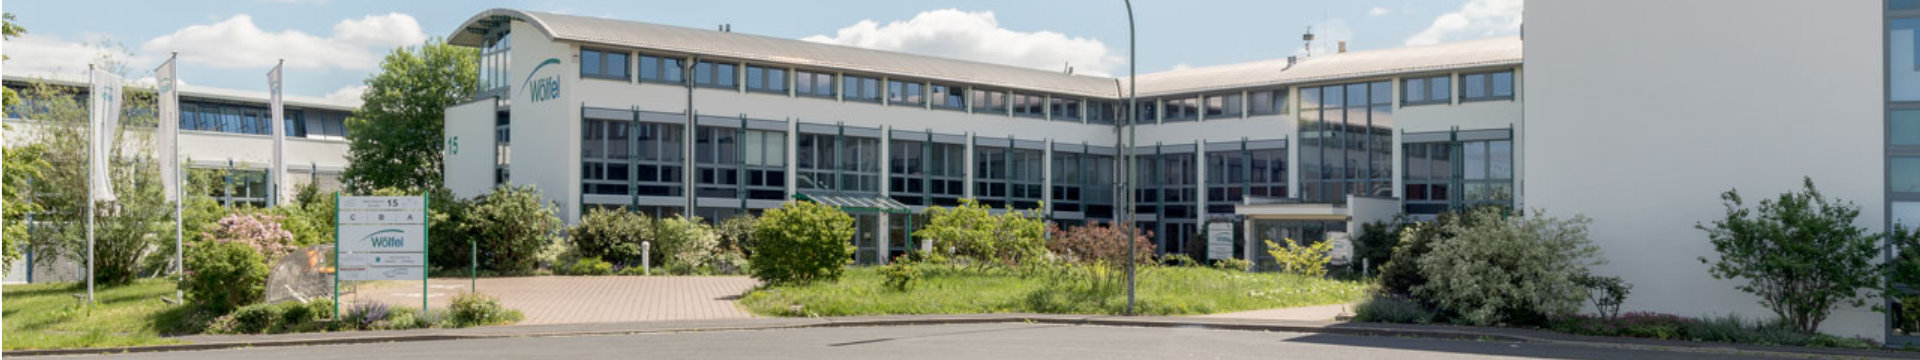 HITech Zentrum in Höchberg bei Würzburg